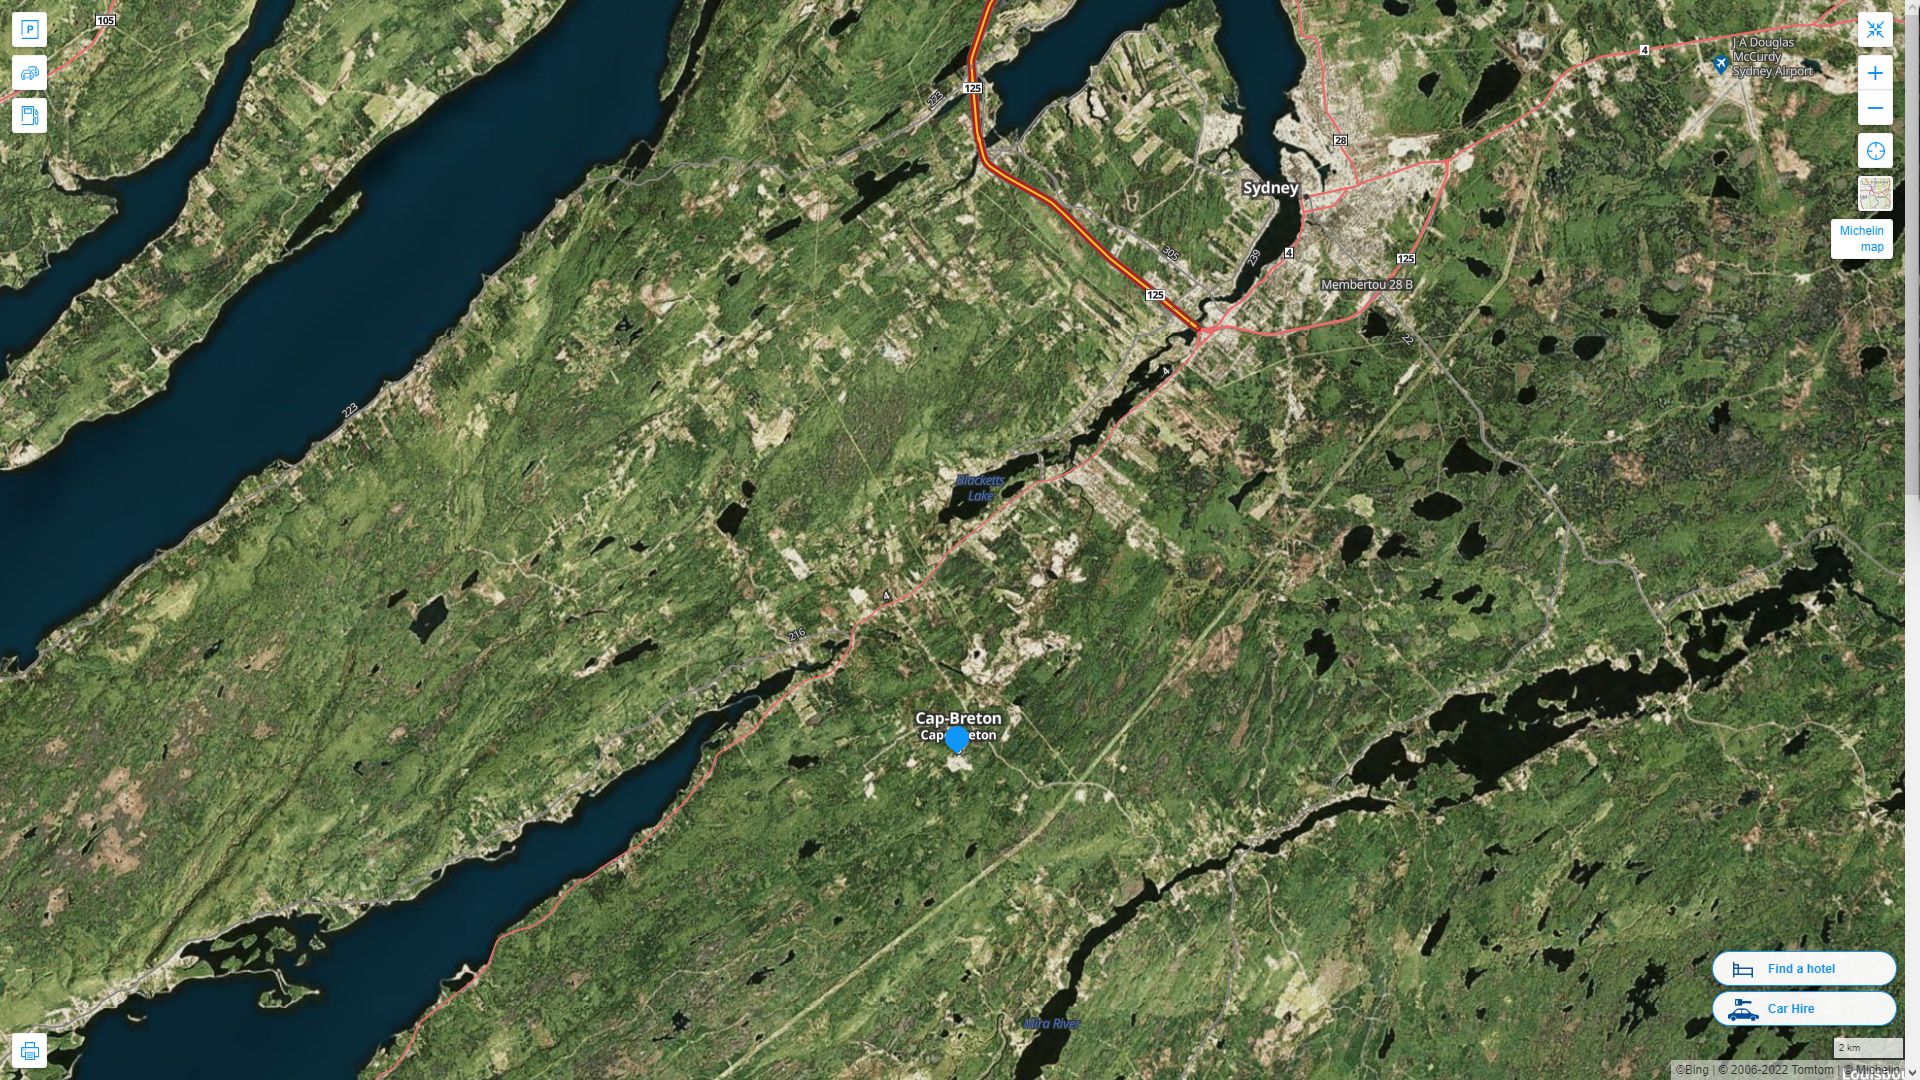 Cape Breton Canada Autoroute et carte routiere avec vue satellite